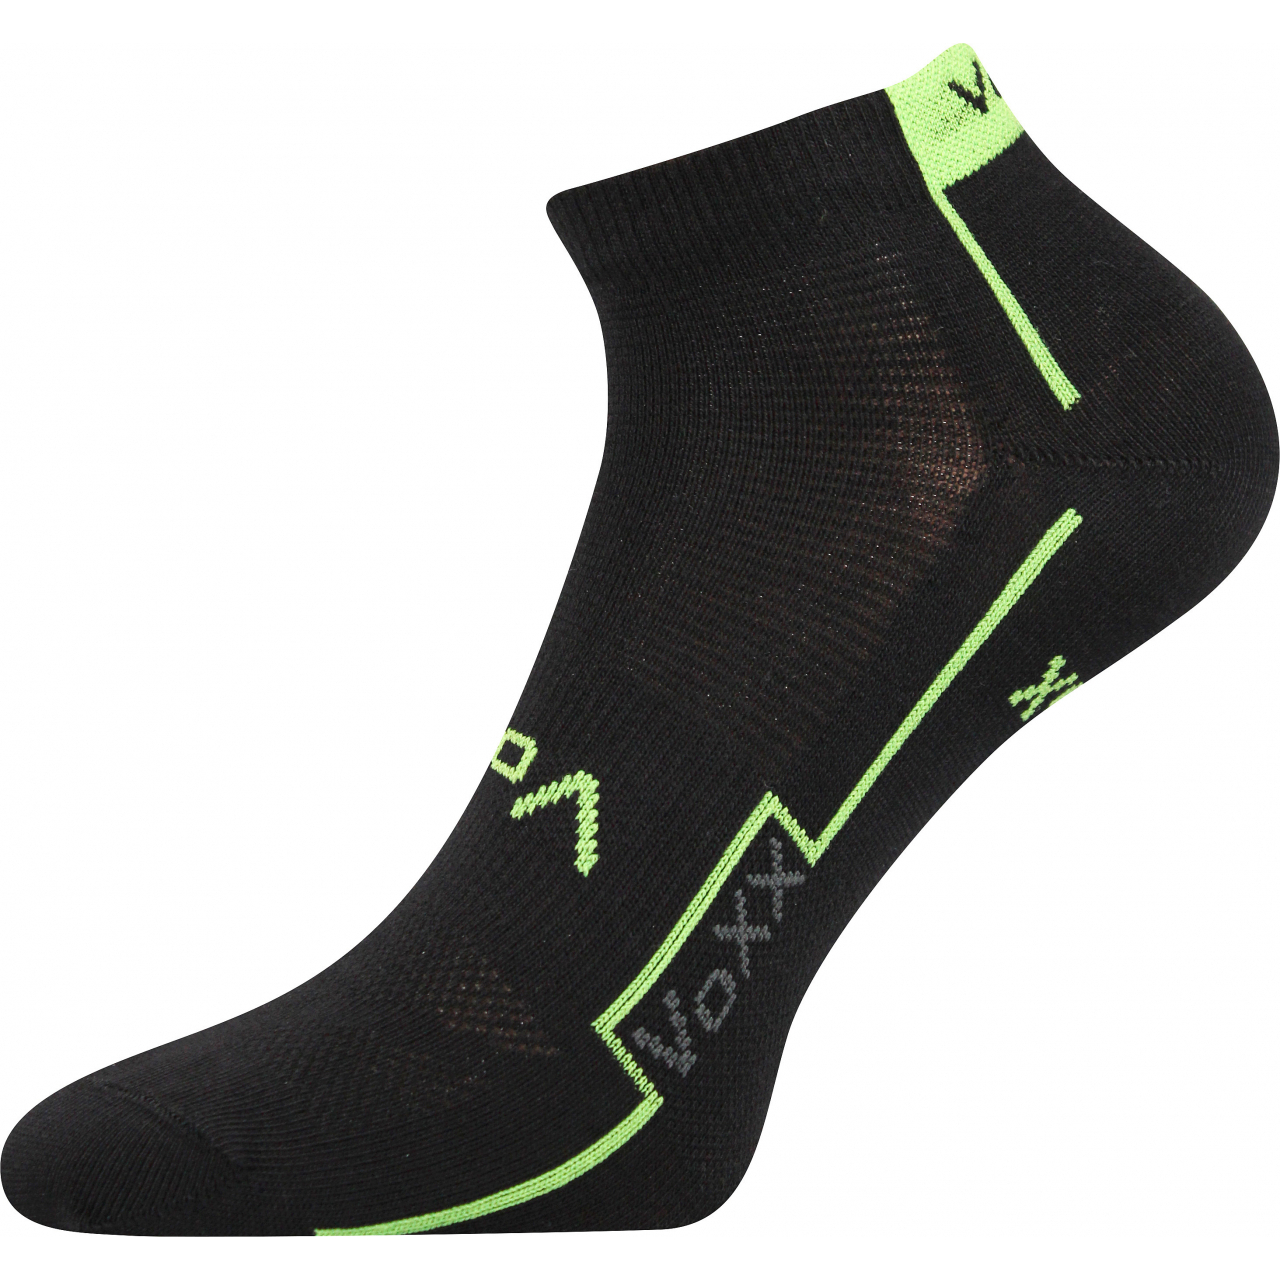 Ponožky unisex sportovní Voxx Kato - černé-zelené, 35-38